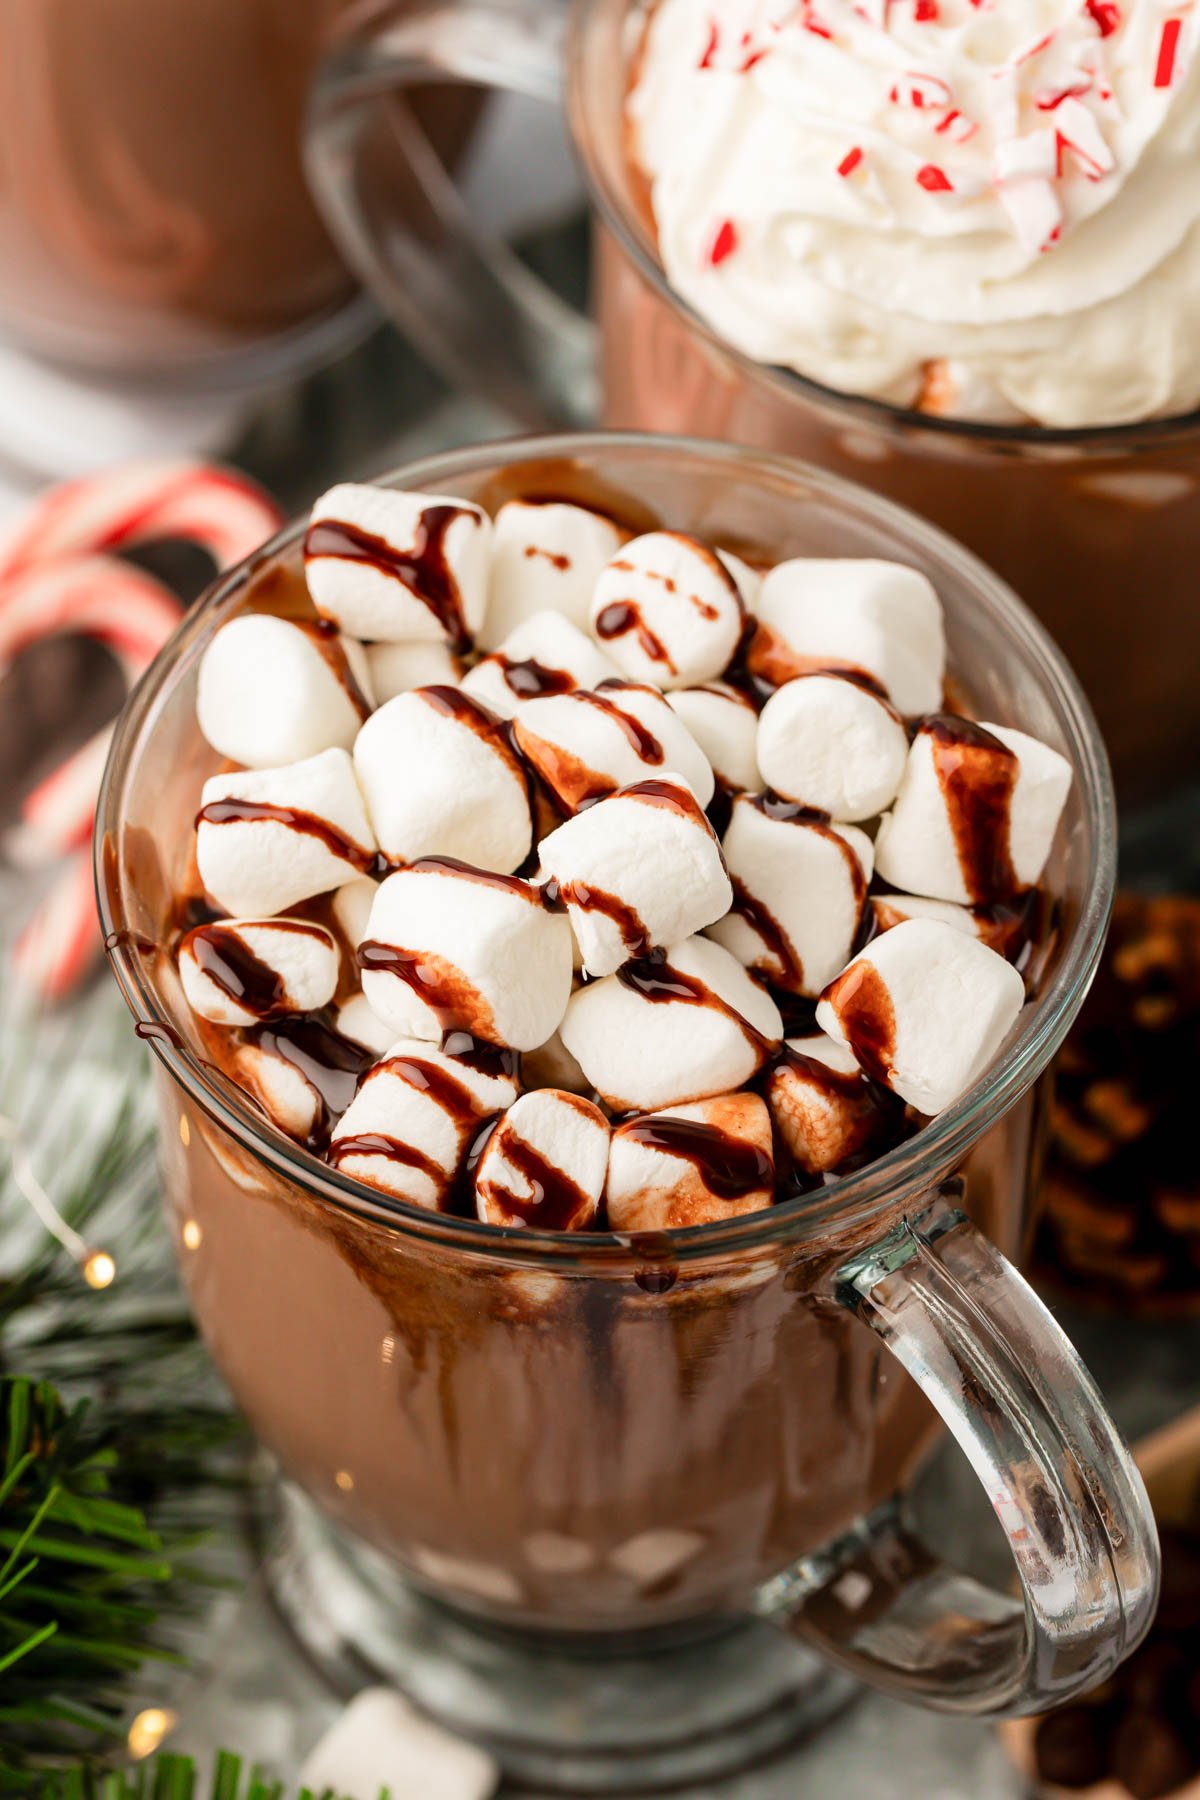 Close up of a mug of hot chocolate.